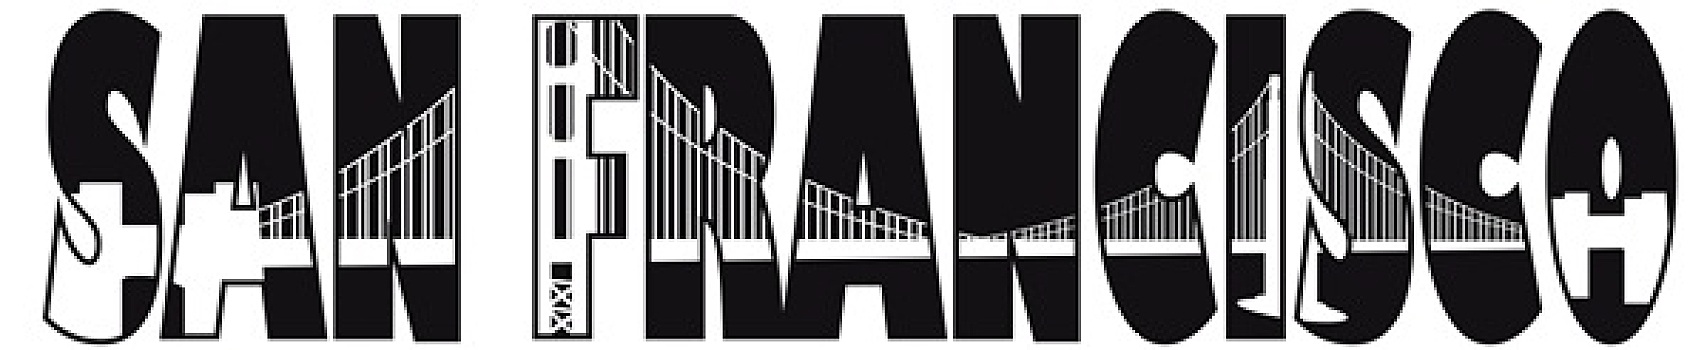 旧金山,金门大桥,文字,轮廓,插画